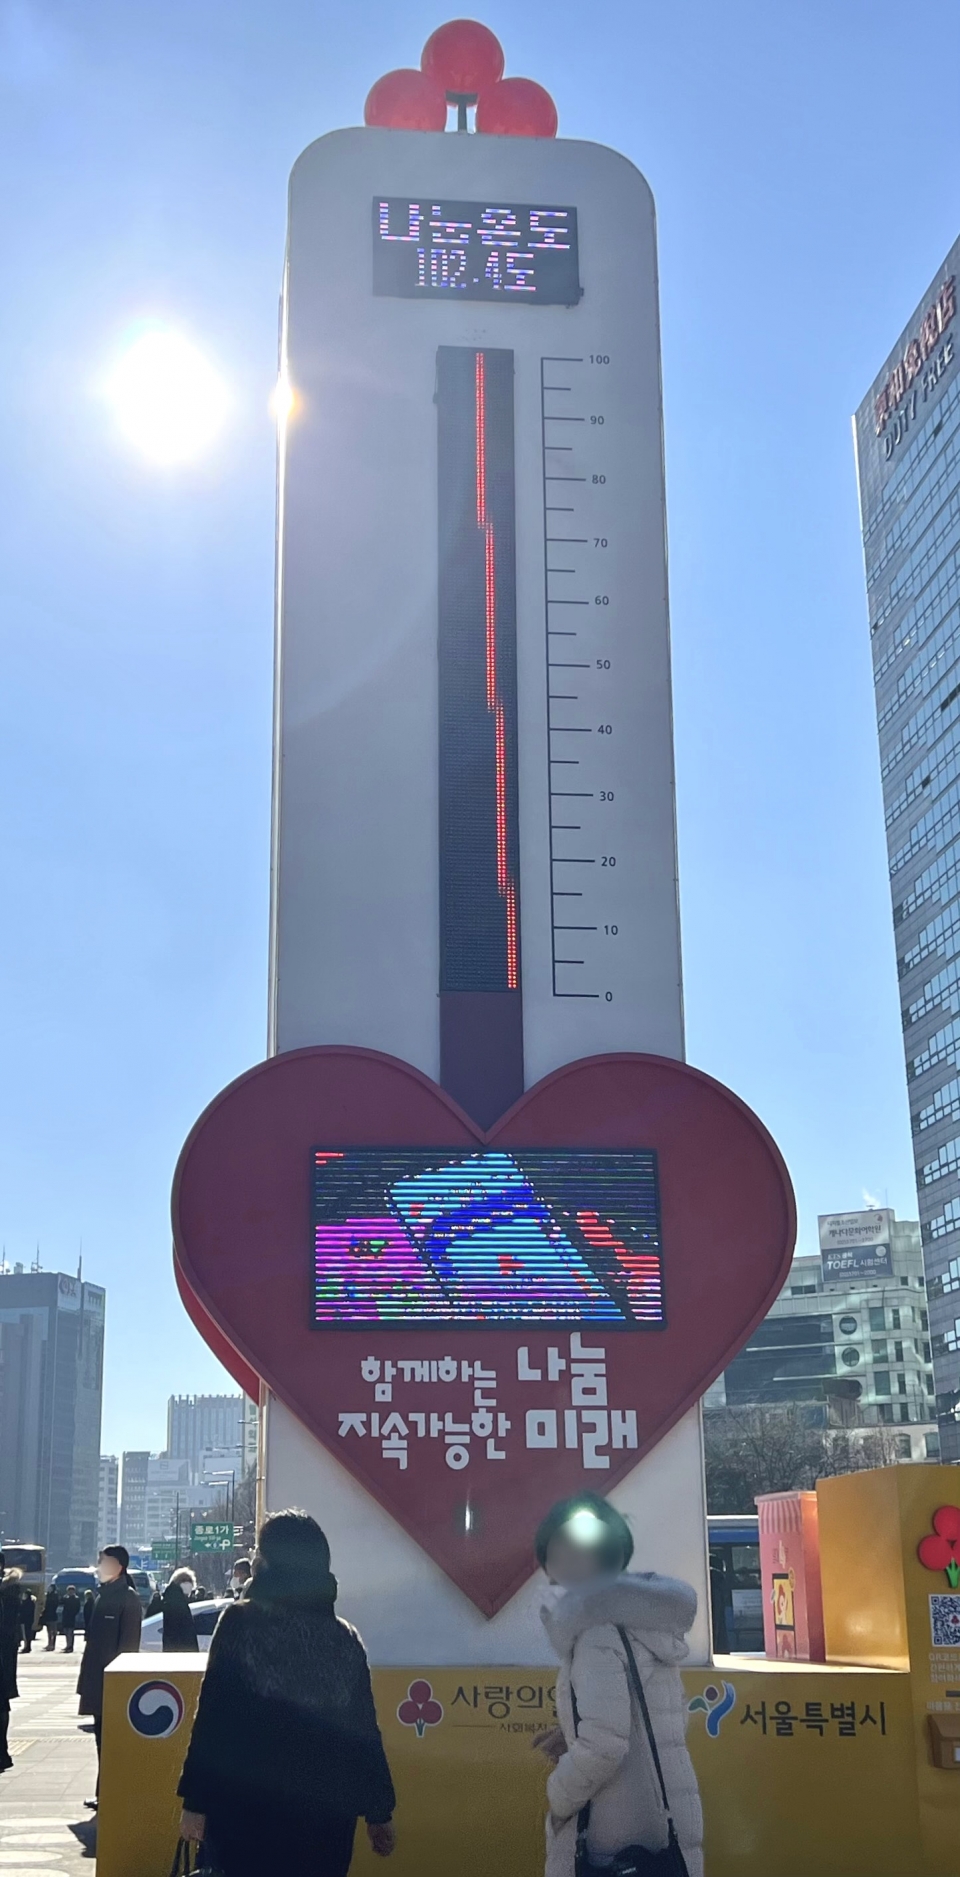 16일 서울 종로구 광화문광장에 설치된 사랑의 온도탑 나눔 온도가 102.4도를 기록했다. ⓒ홍수형 기자